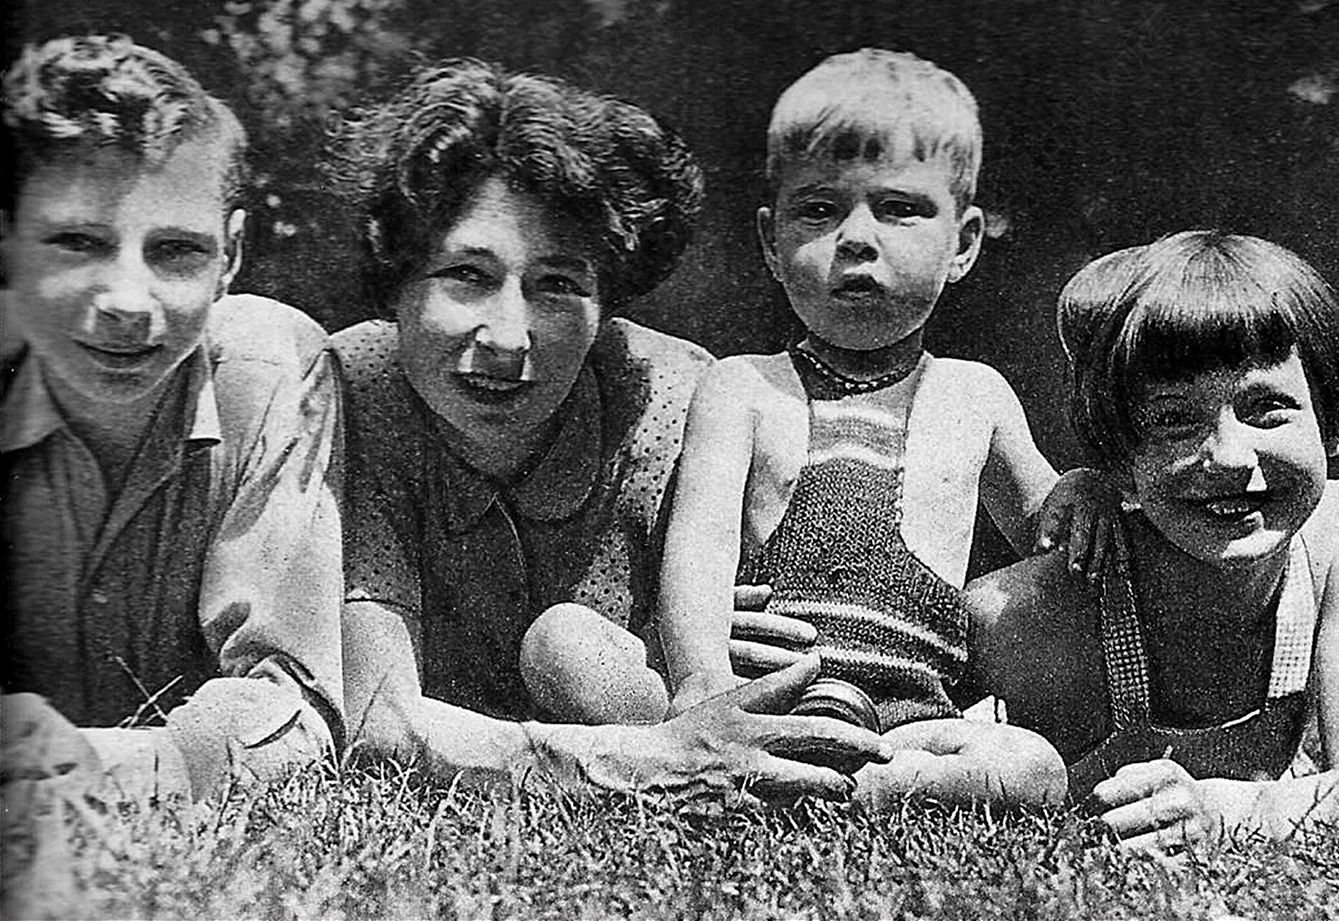 8.乌尔苏拉·伯尔东——“索尼娅”——和她的孩子们，1945年于牛津。“索尼娅”是格鲁乌在英国从事非法活动的头号人物，她在1942年10月到1943年11月期间是福克斯的联络人。